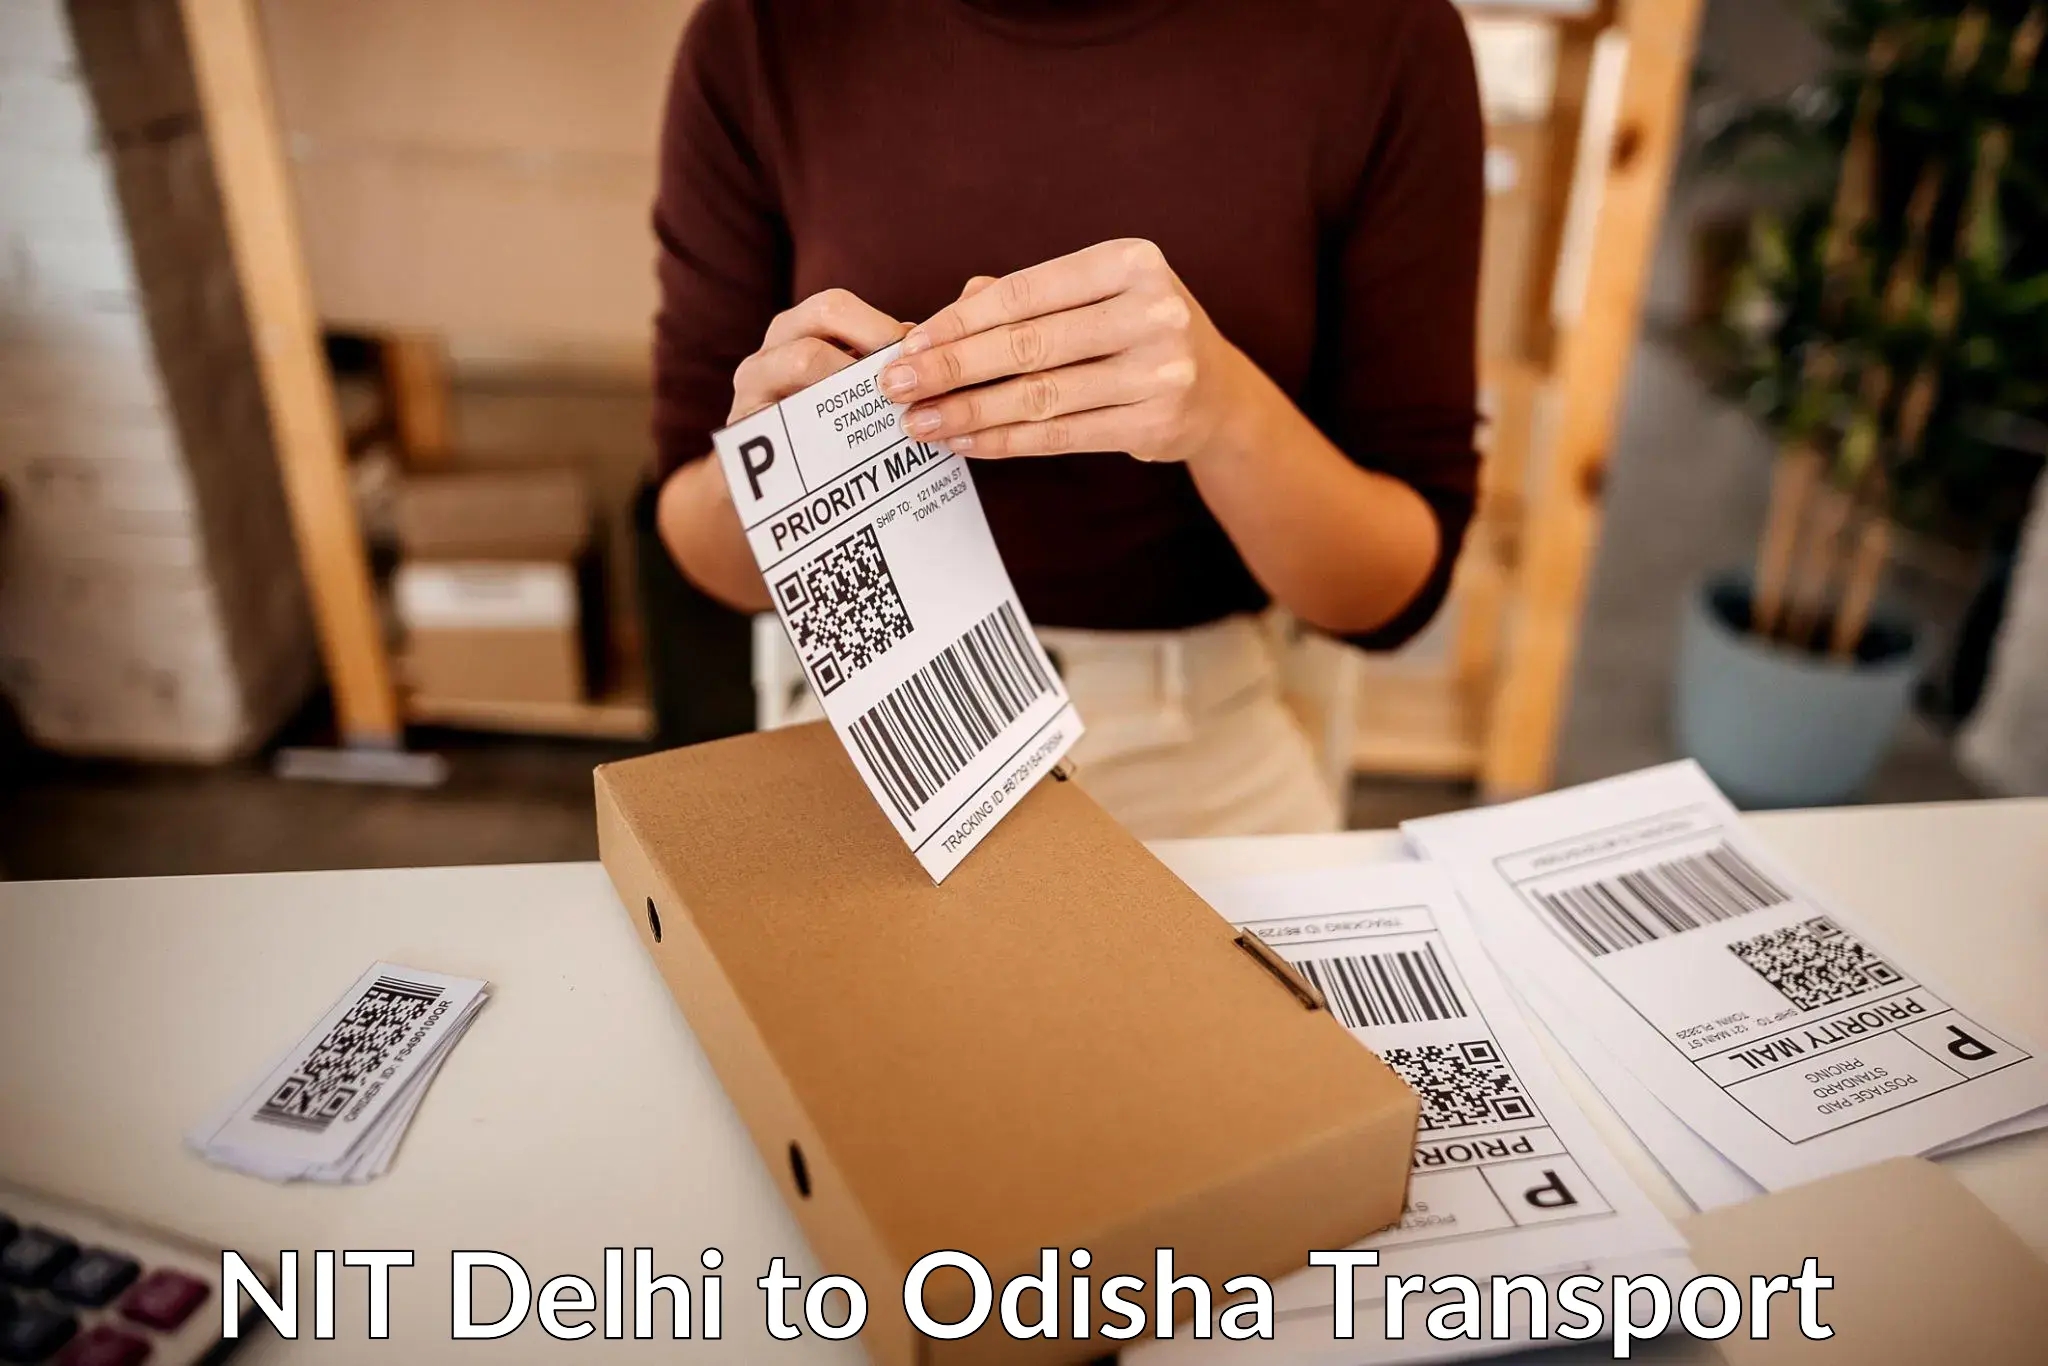 Interstate transport services NIT Delhi to Sambalpur